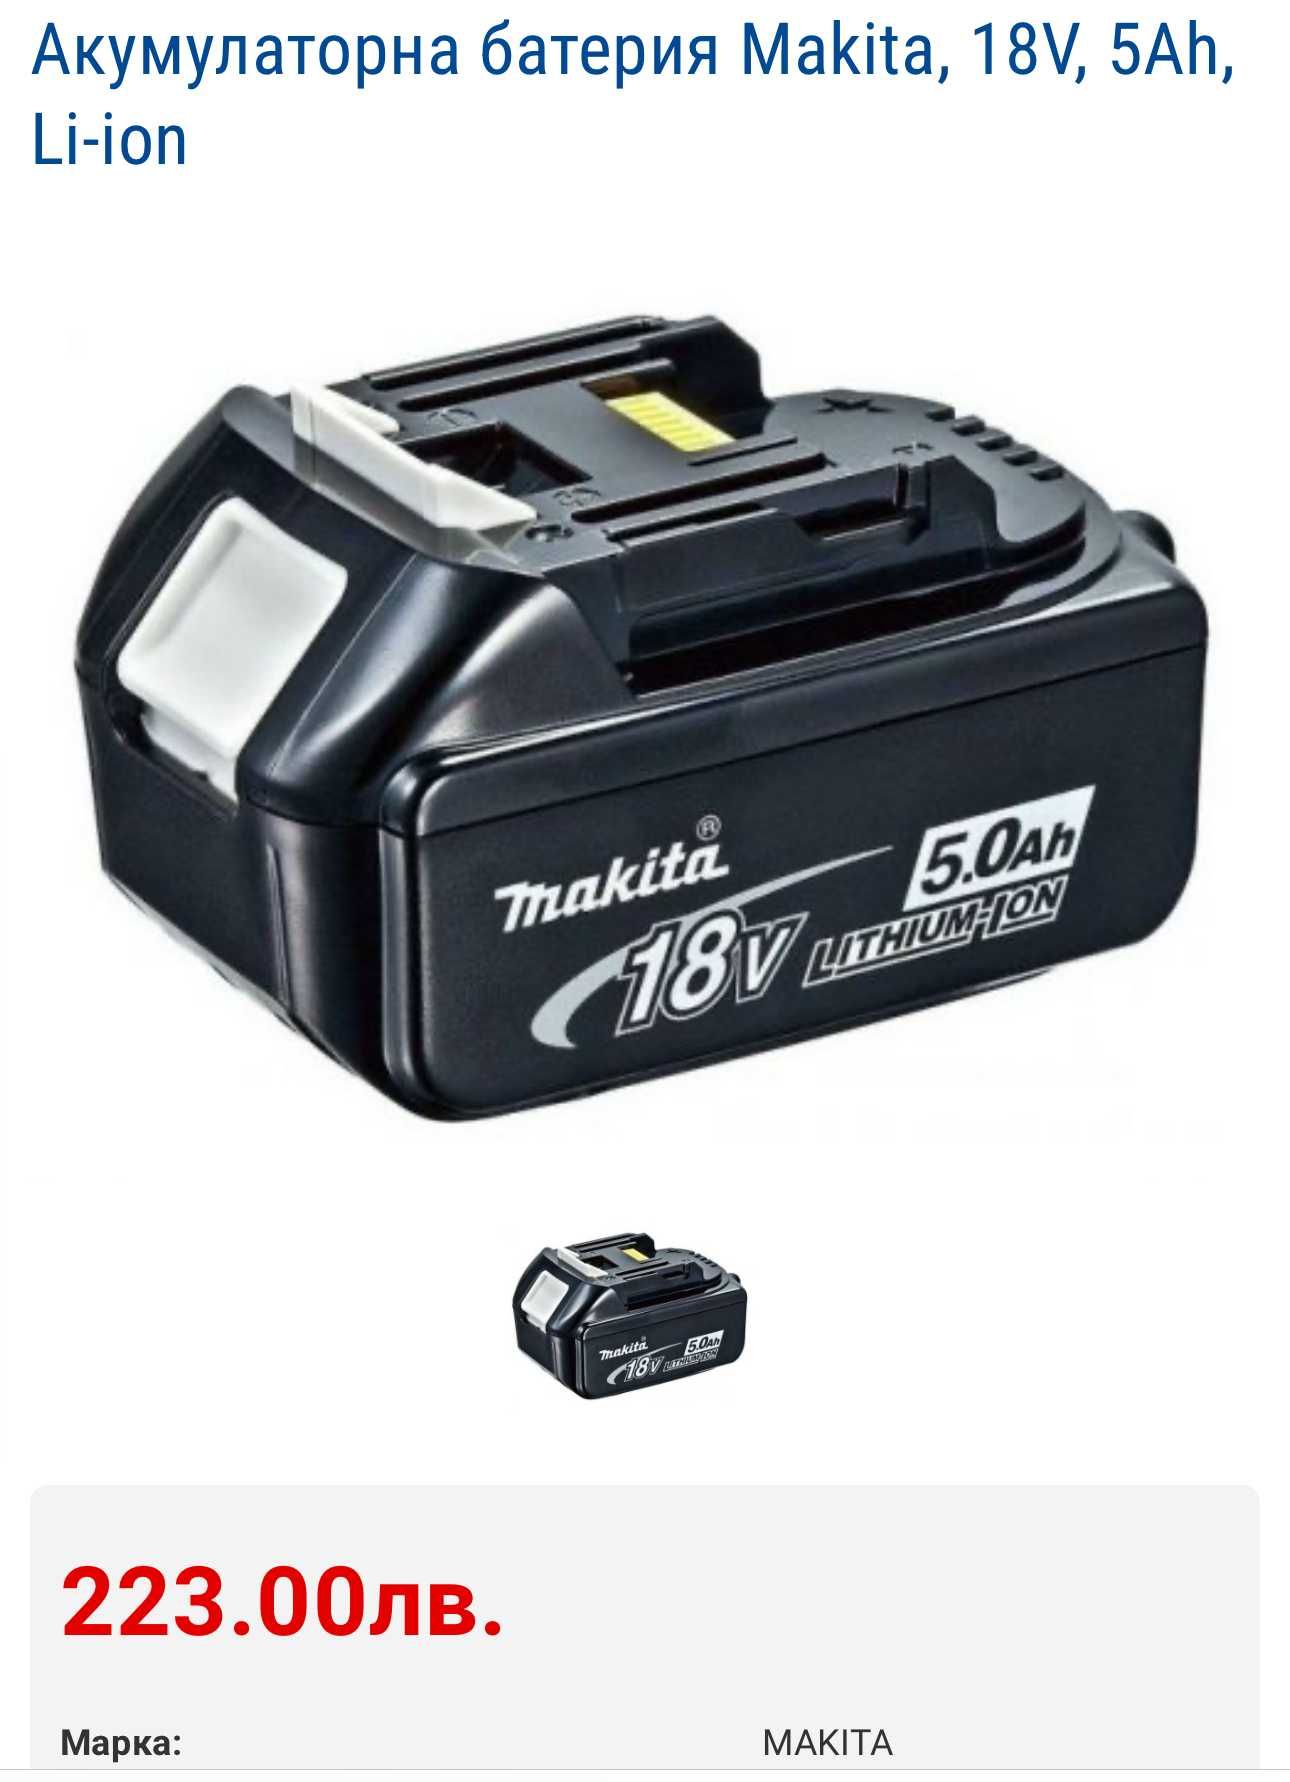 Makita BL1850B - Акумулаторни батерии 18V 5.0Ah с индикатор